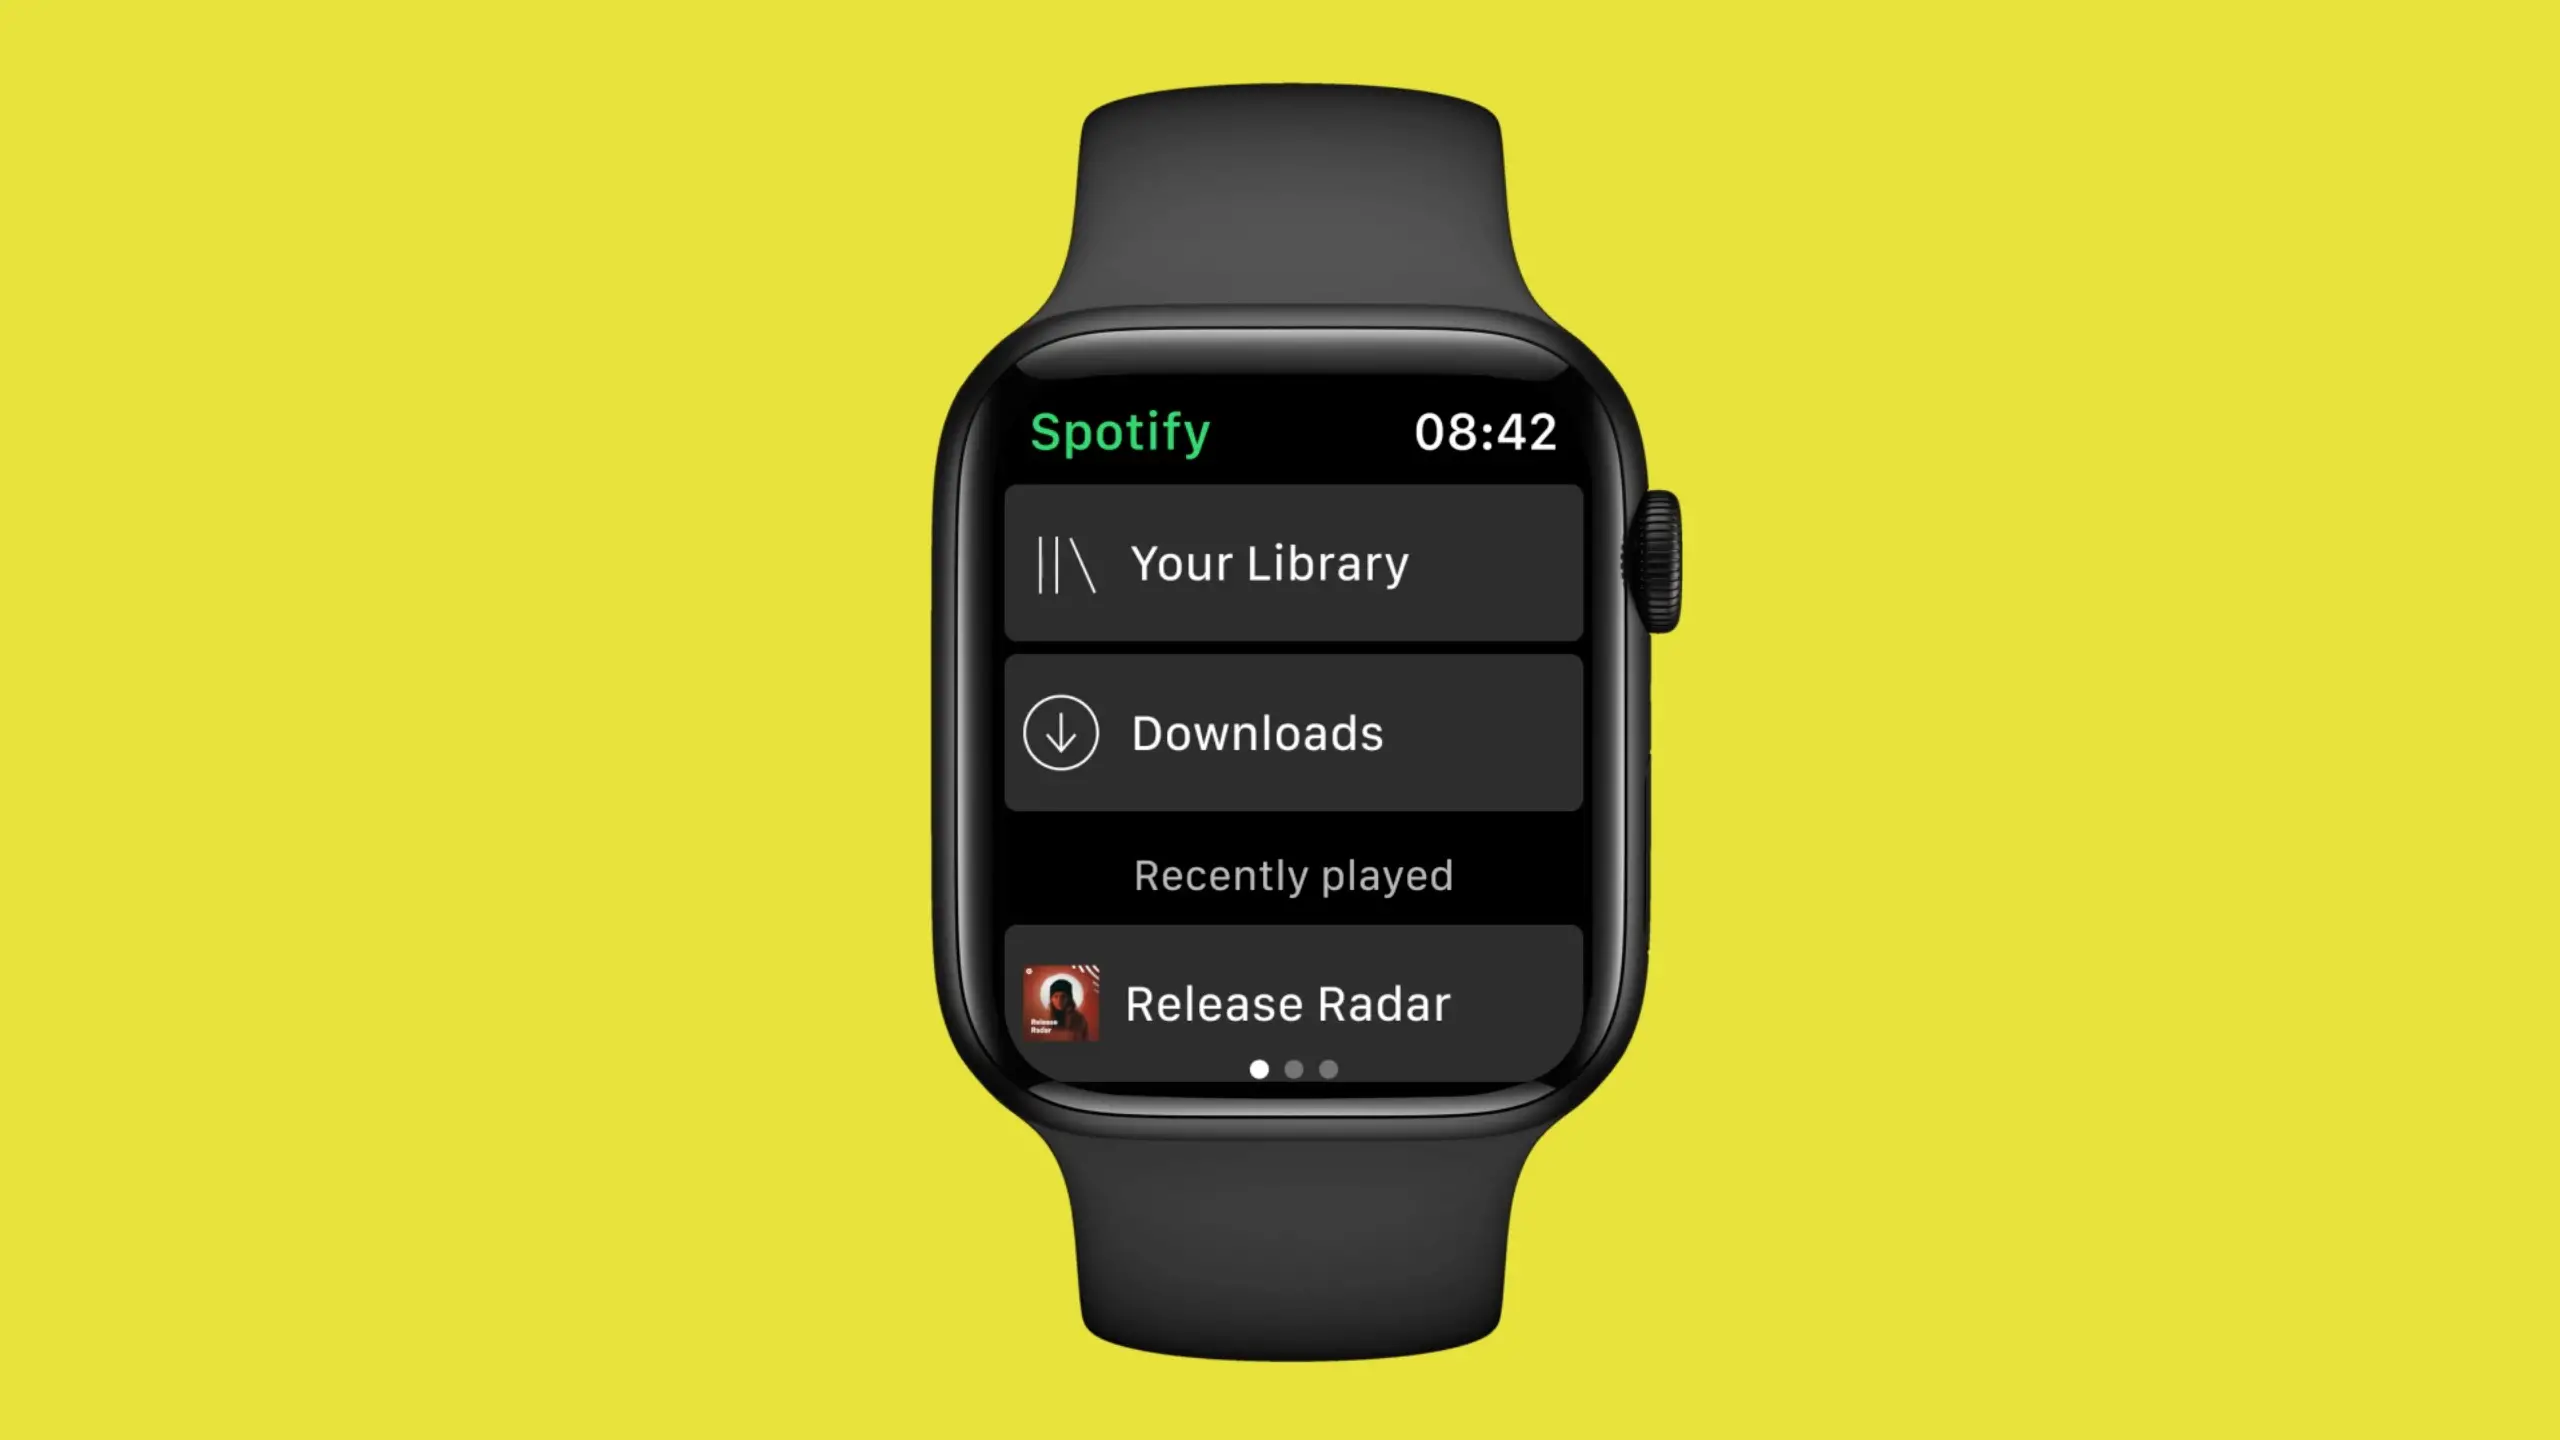 Un'immagine che mostra un Apple Watch su sfondo giallo.  L'orologio viene mostrato mentre esegue l'app Spotify in modalità offline con la sezione Download visibile nell'interfaccia.